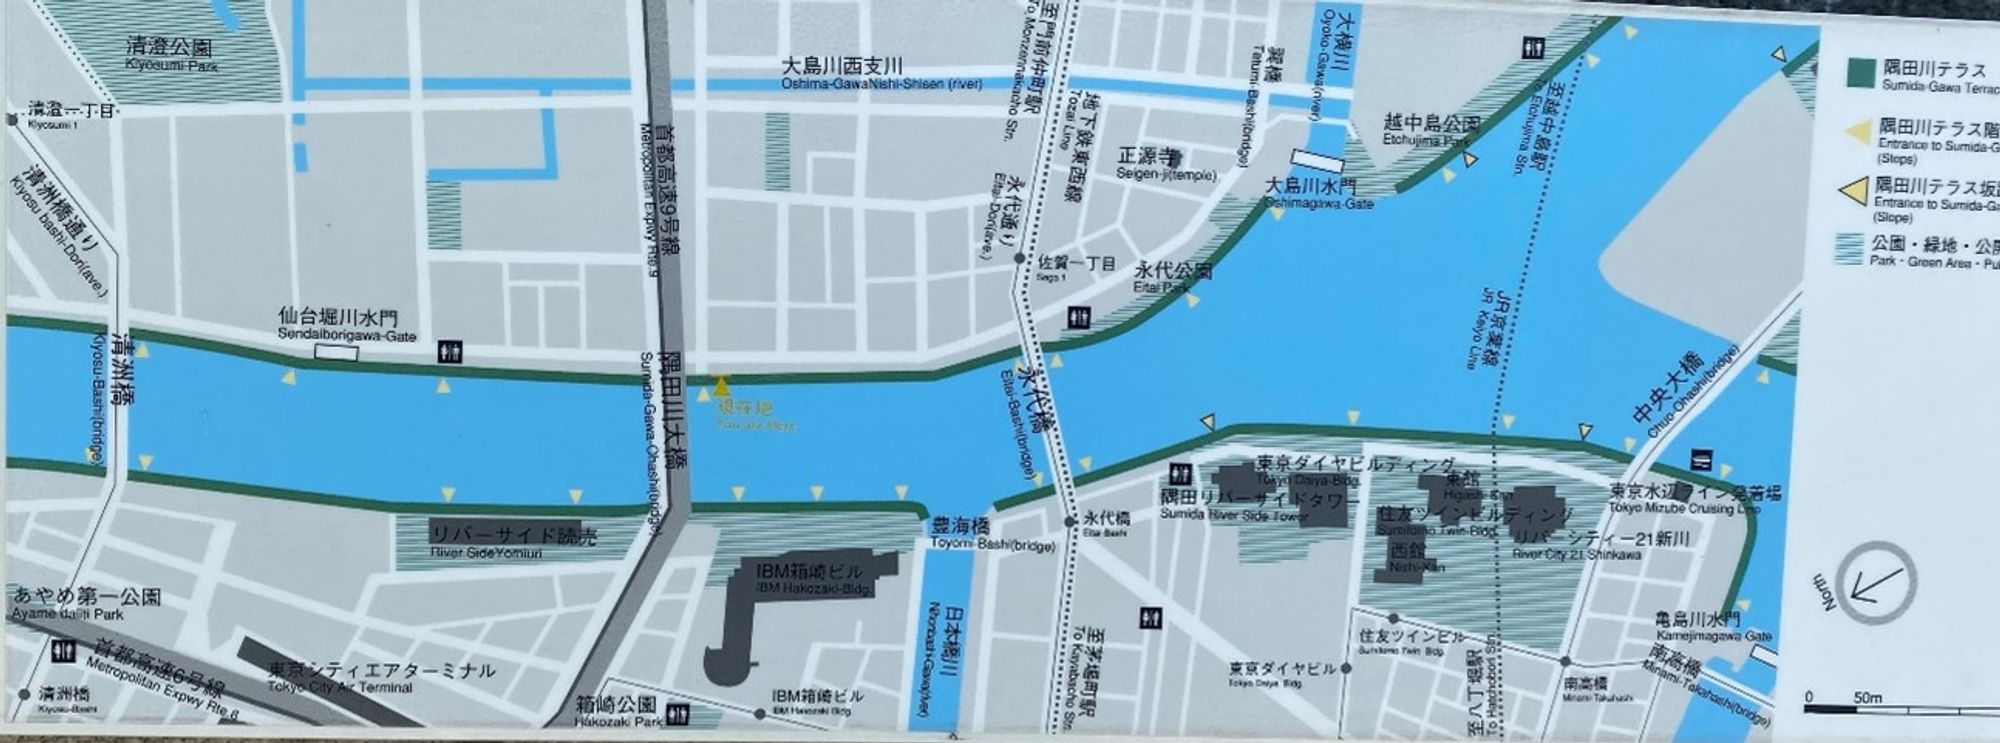 Difficile de se perdre le long de la Sumida river, mais “You are here” peut être utile ! Ici, le Nord est en bas à gauche.